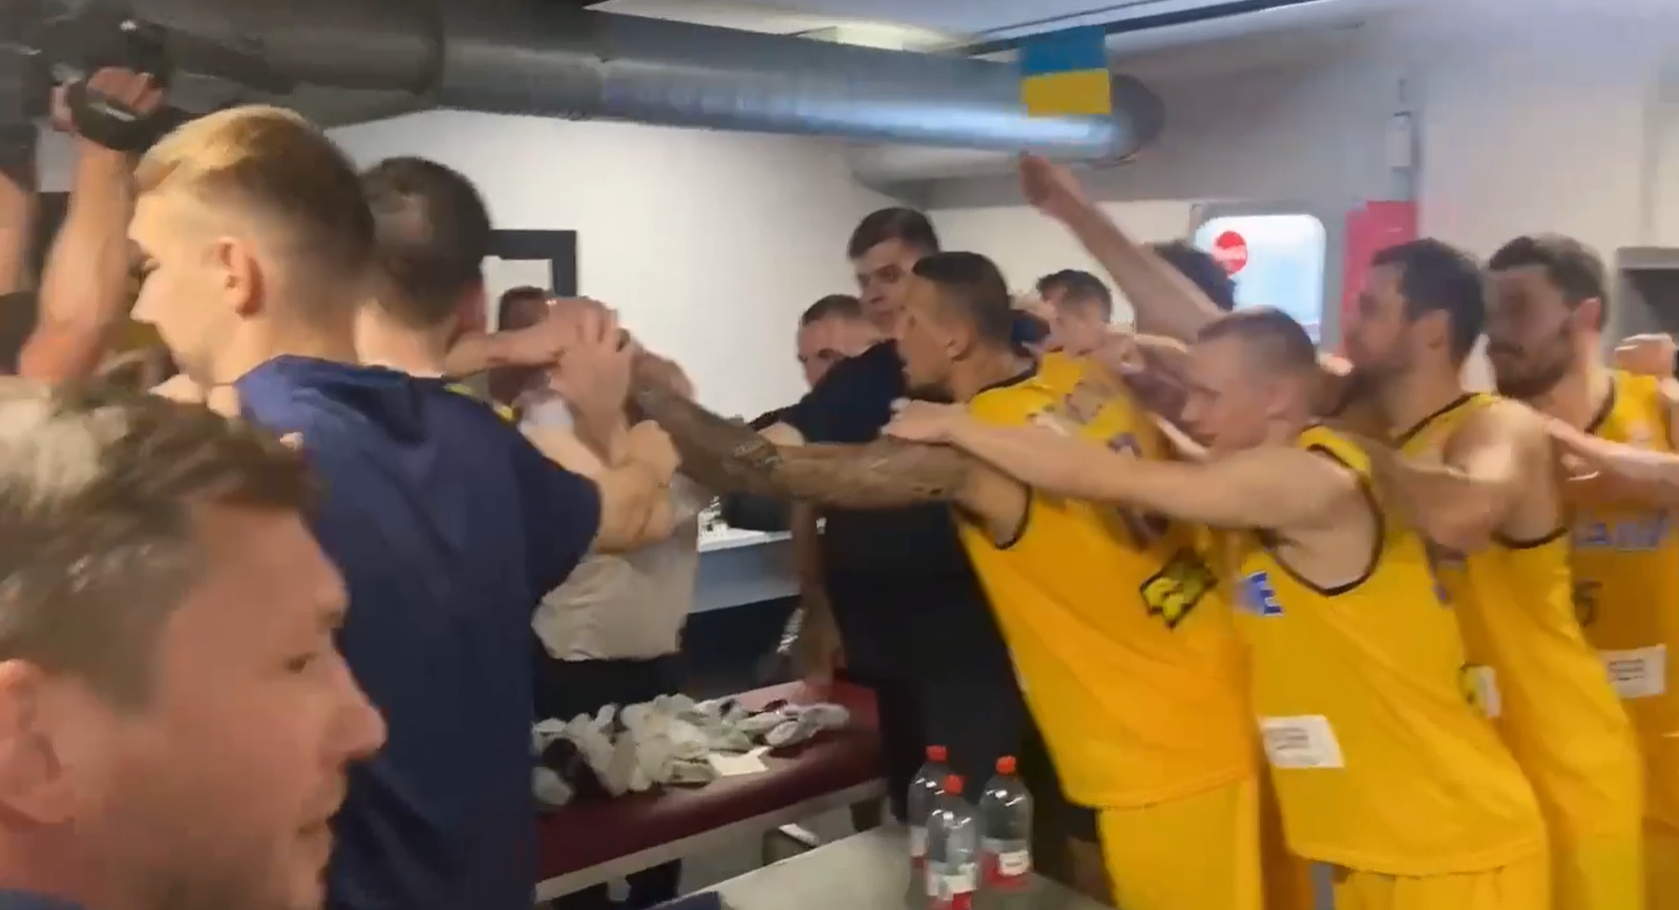 Як українці обіграли Грузію та вийшли до другого етапу відбору ЧС із баскетболу: відео найкращих моментів